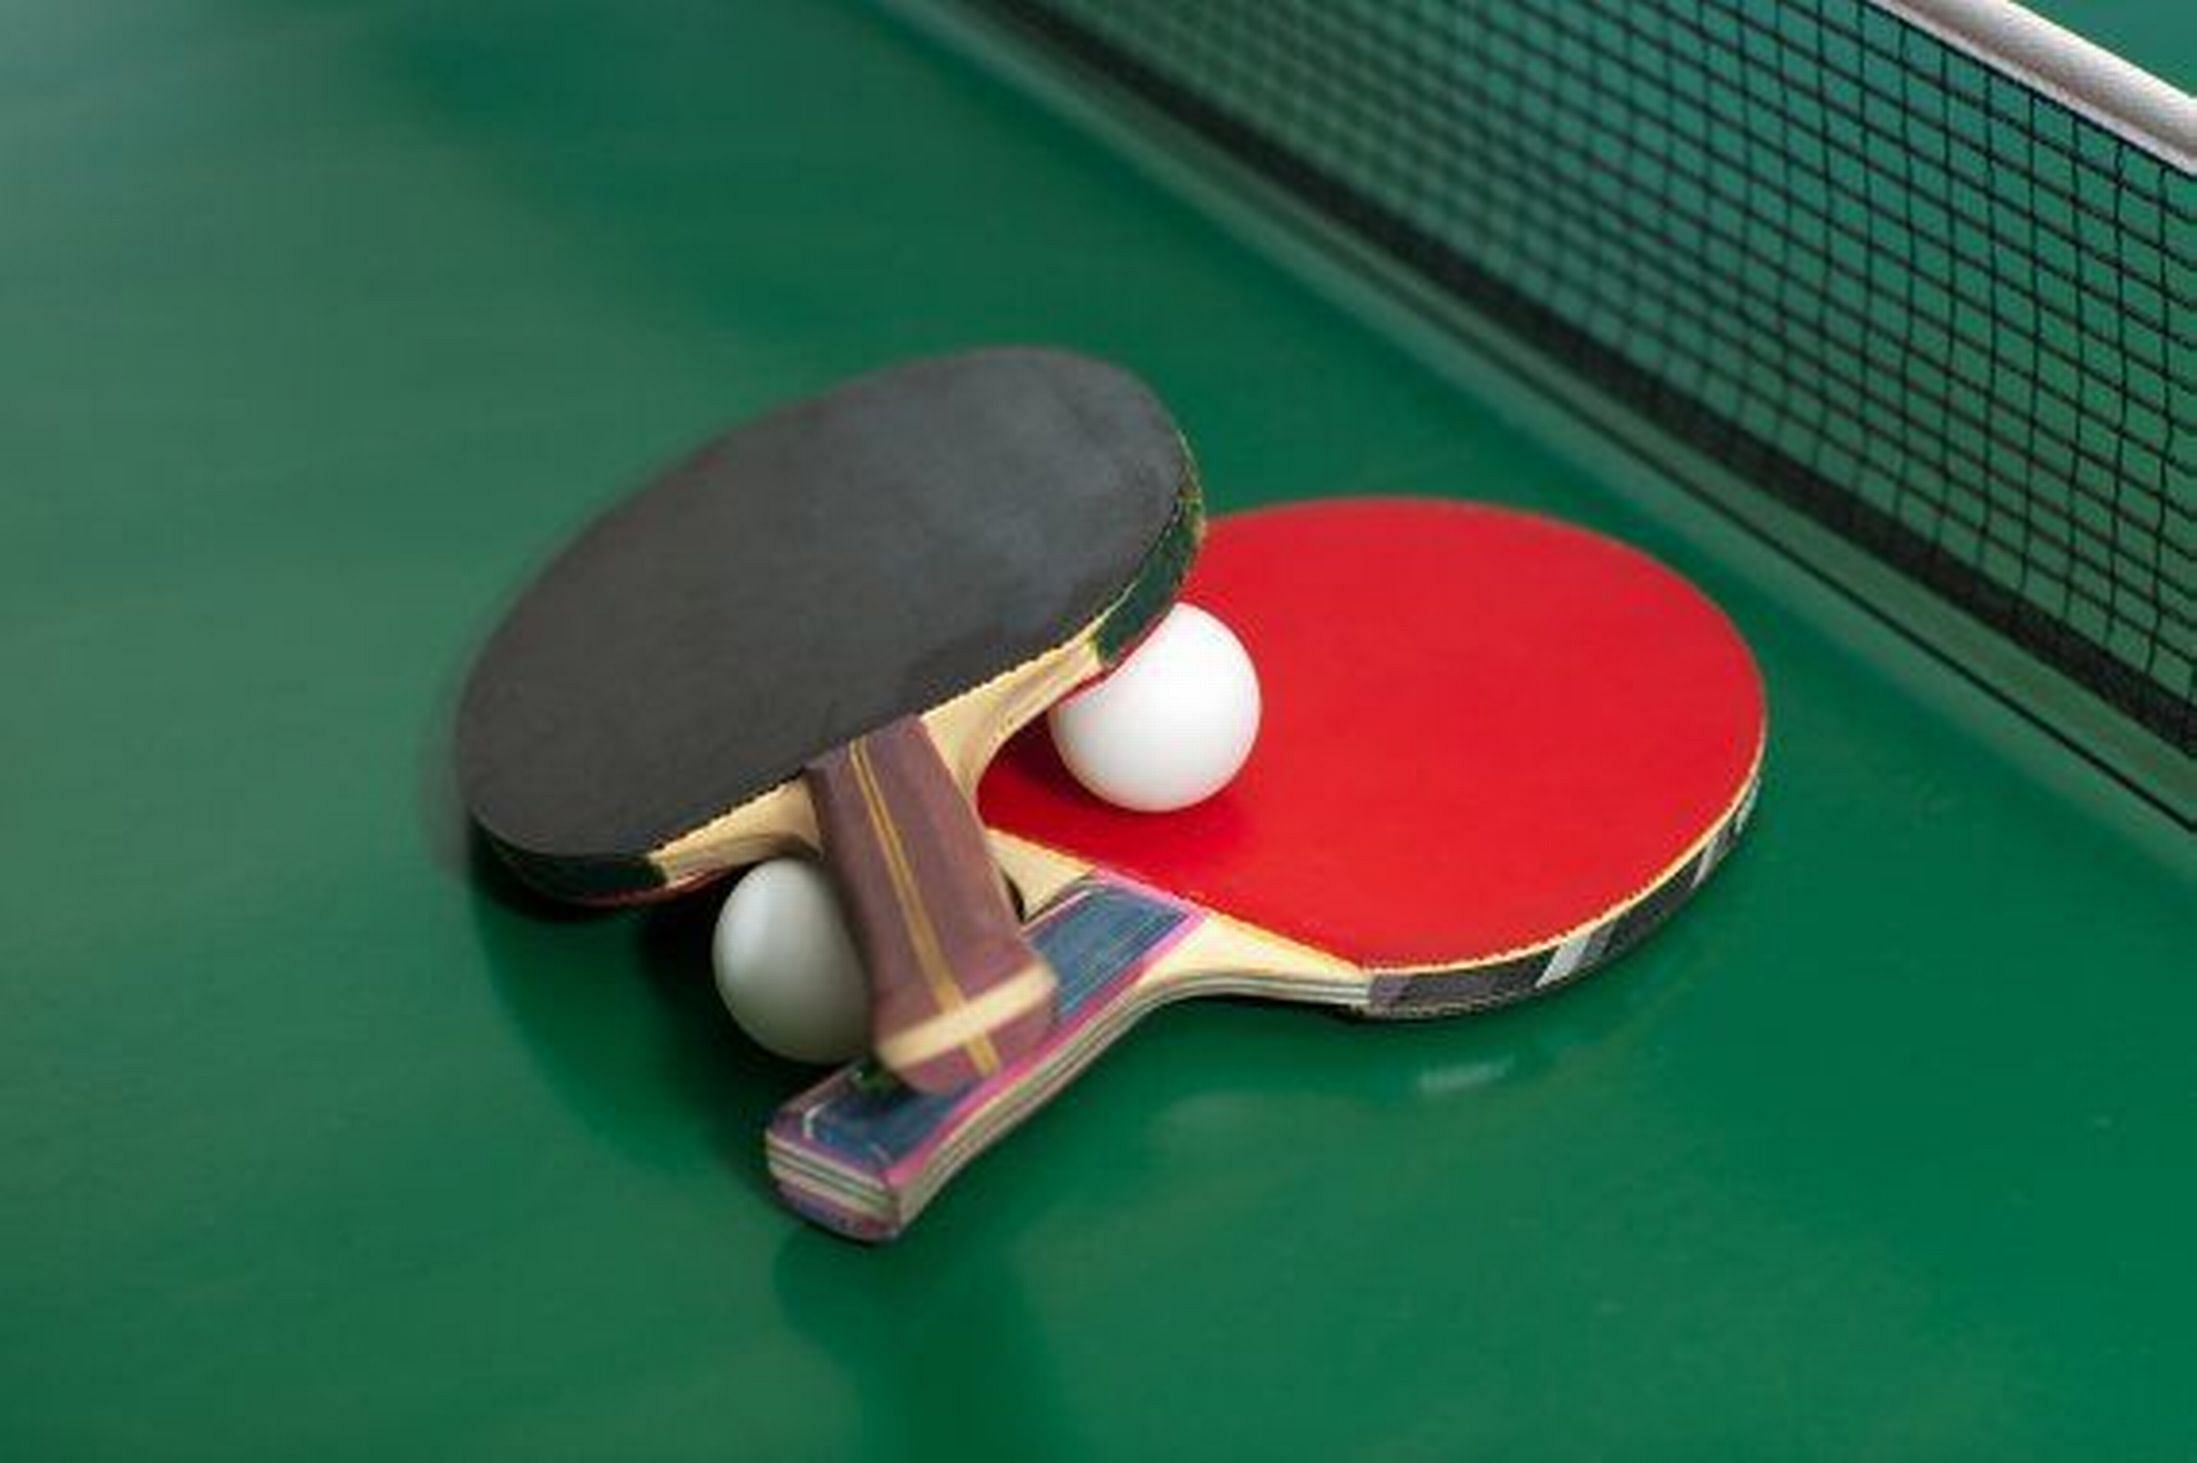 Настольный теннис линия. Настольный теннис. Пинг-понг. Ракетка для настольного тенниса. Настольный теннис ракетки на столе.